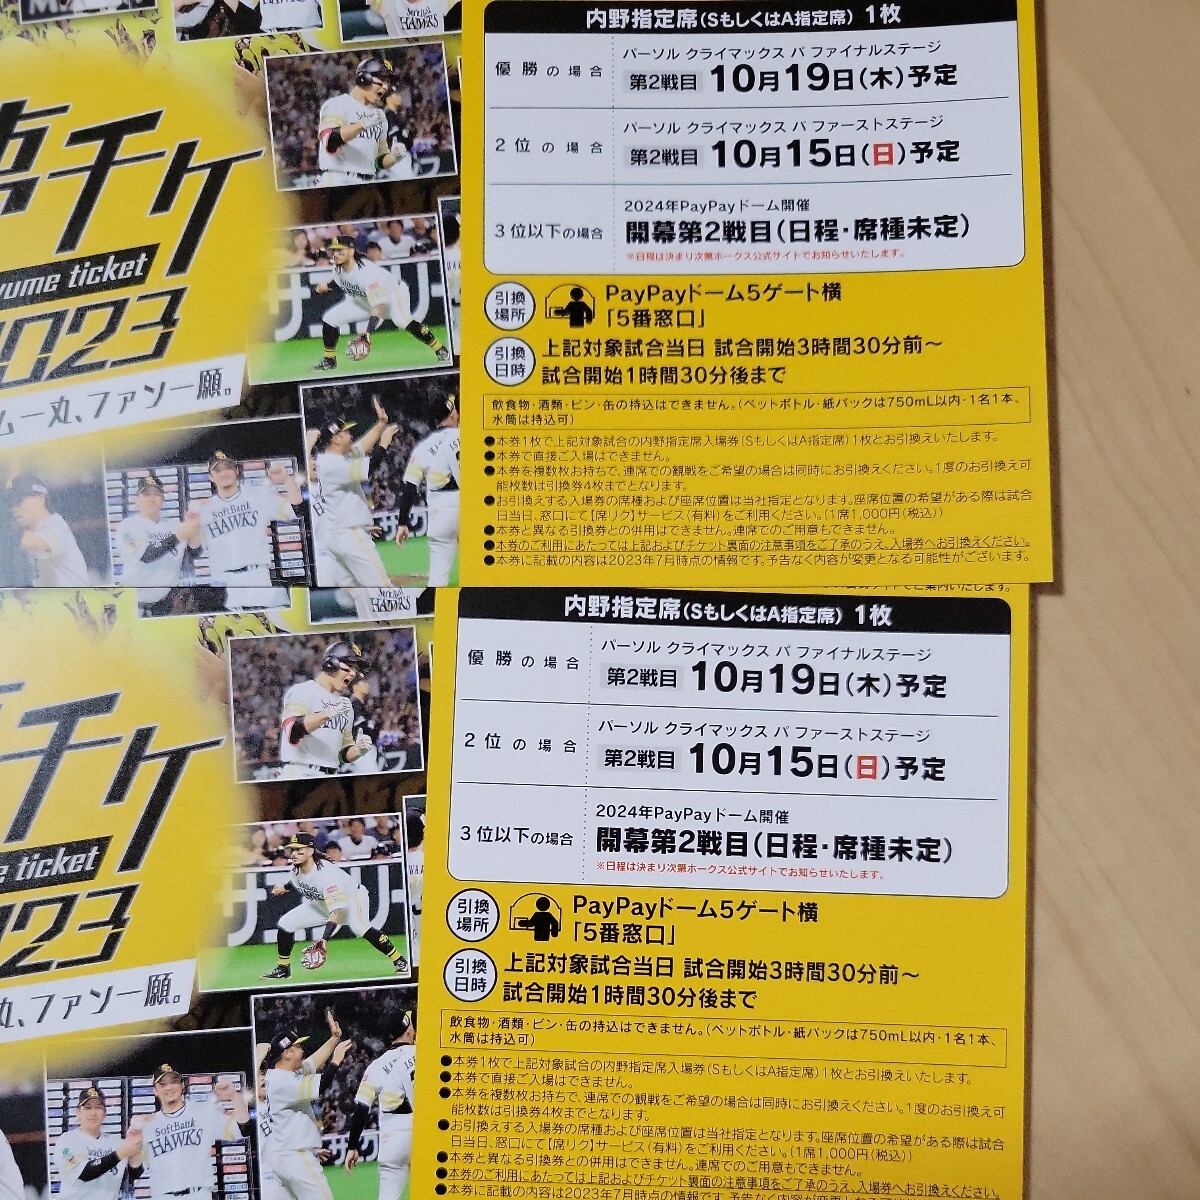 3 апреля (среда) Открытие 2 Билеты 2 штуки Softbank против Chiba Lotte